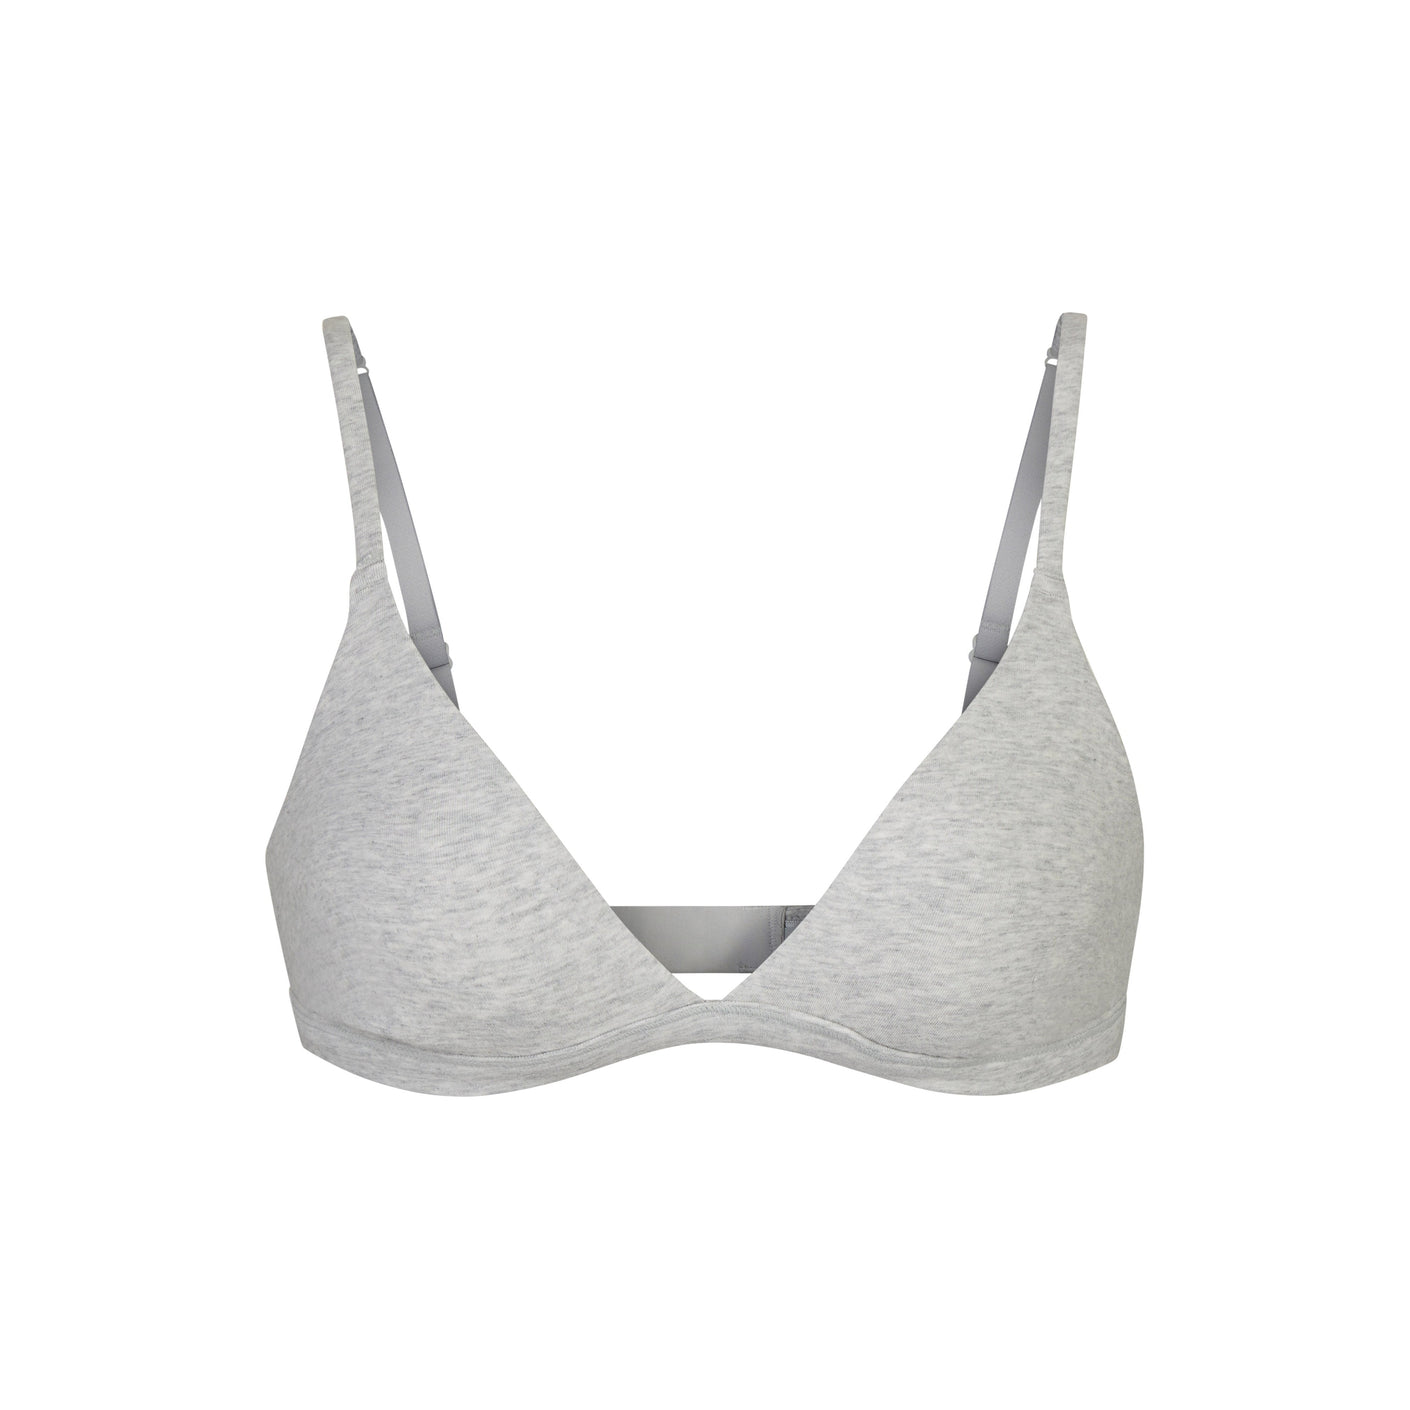 Grey DIM Originals modal cotton non-wired triangle bra